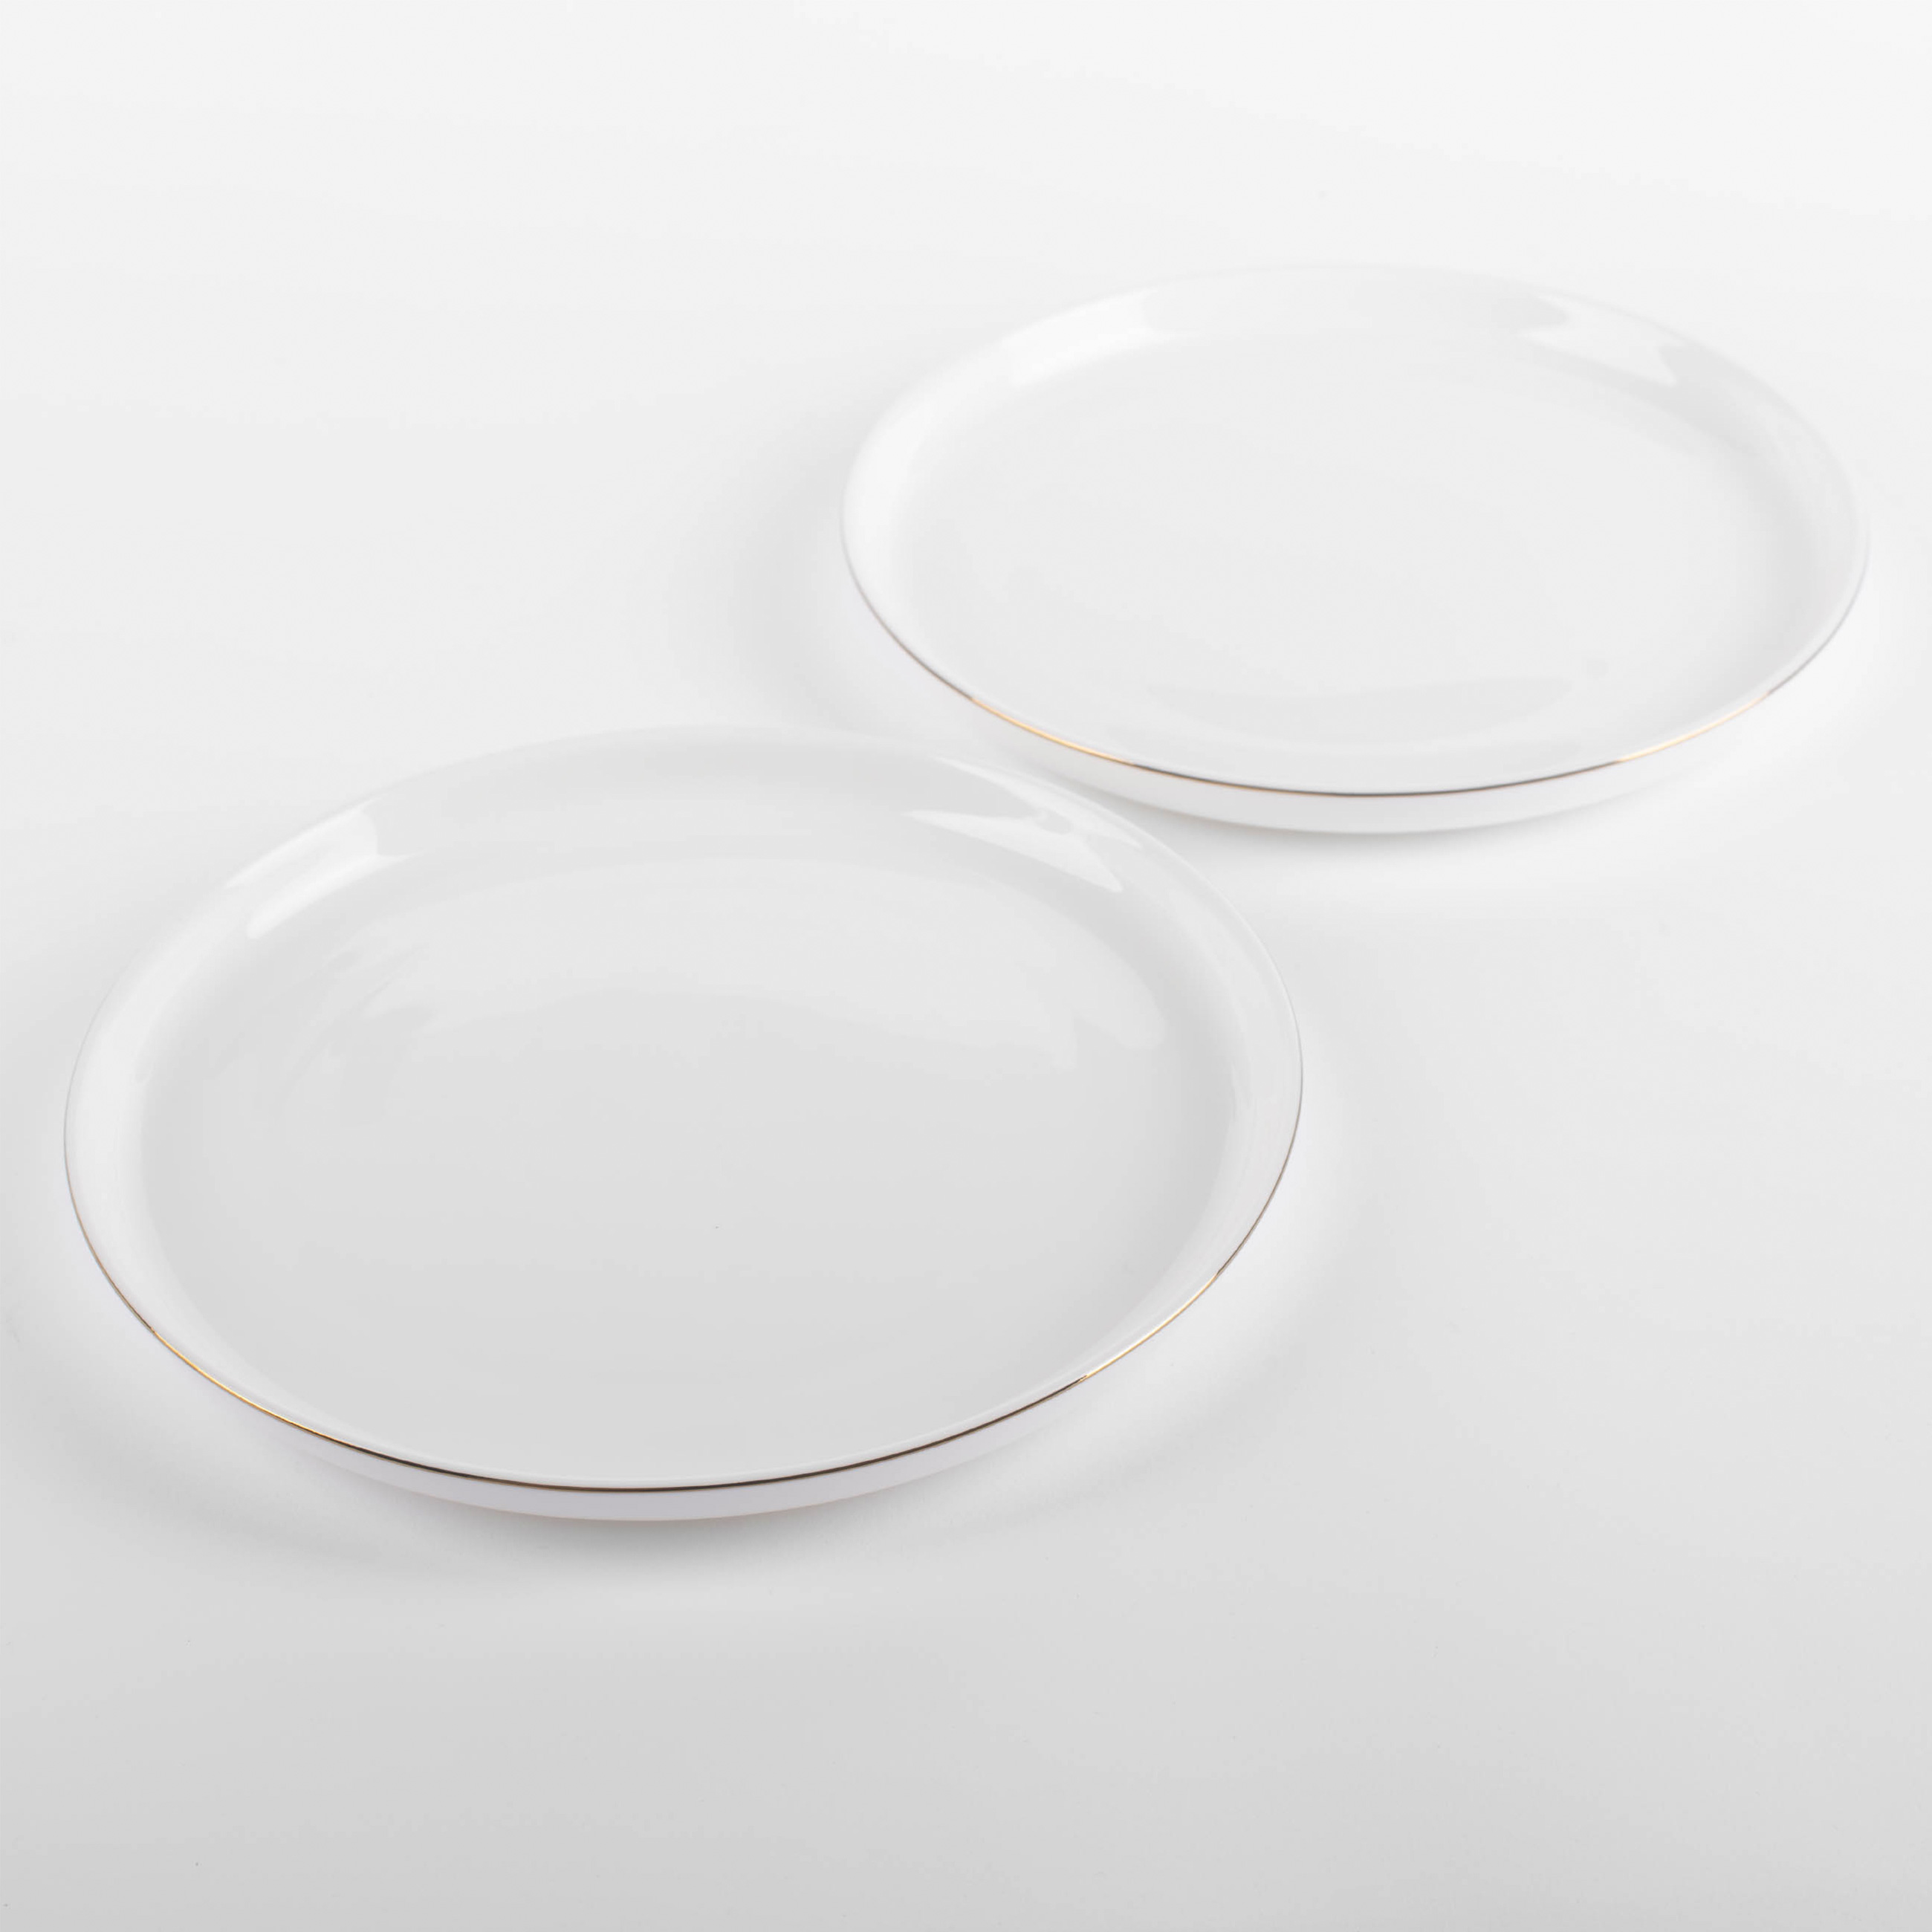 Dessert plate, 20 cm, 2 pieces, porcelain F, white, Ideal gold изображение № 3